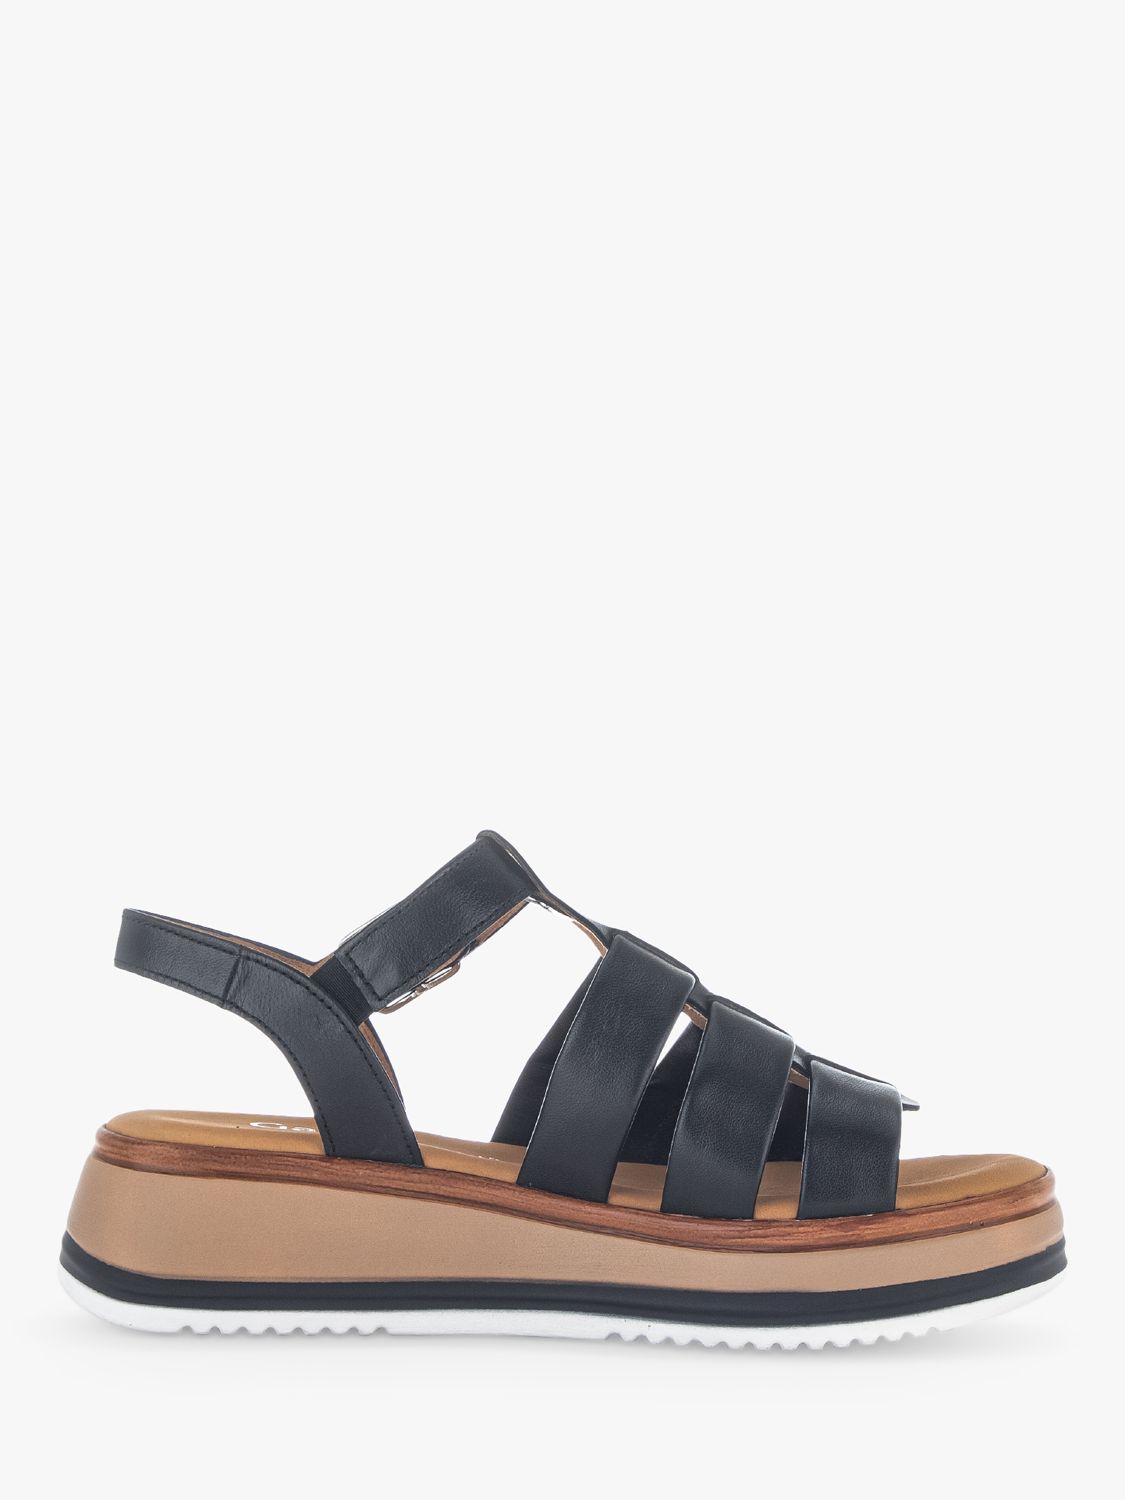 Gabor Sandals, Black, 3